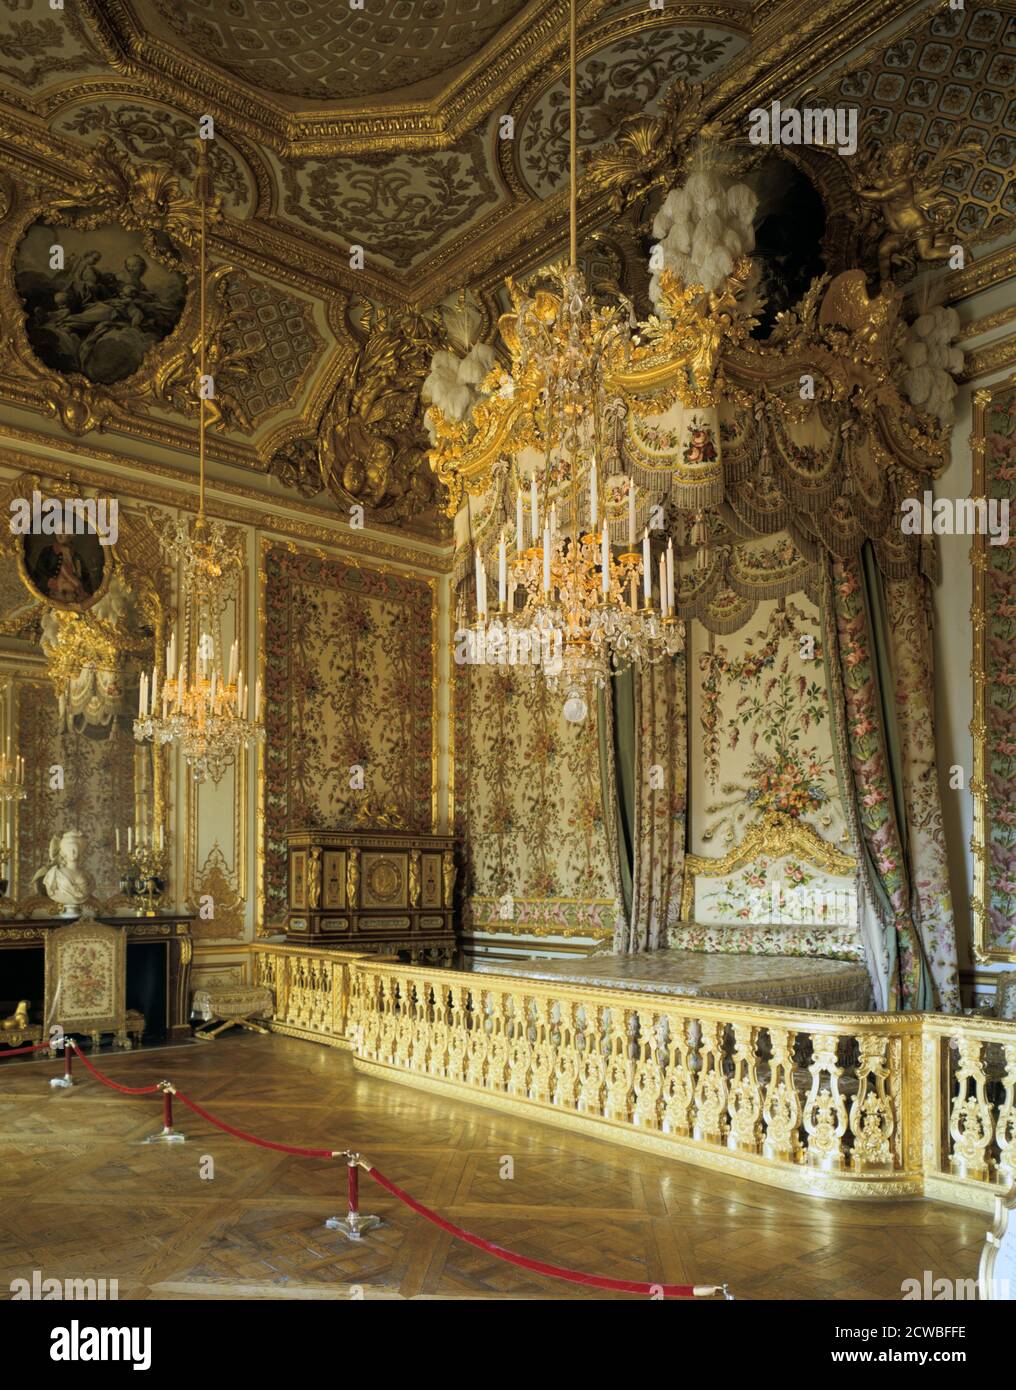 Das Schlafzimmer der Königin, die Suite der Königin (Grand Apartment de la reine), Chateau de Versailles, Frankreich. Die Holzarbeiten im Rokoko-Stil sowie das Deckengemälde von Francois Boucher (1703-1770) wurden um 1730 von Ludwig XV. In Auftrag gegeben, um seiner Frau Maria Leszczynska zu gefallen. Marie-Antoinette fand das schrecklich altmodisch und beschloss, alle Möbel zu ersetzen, insbesondere die Inbetriebnahme von Seidenbehängen in Mustern von Flieder und Pfauenfedern gewebt, schmückt die Nische und das riesige Himmelbett (restauriert 1976). Stockfoto